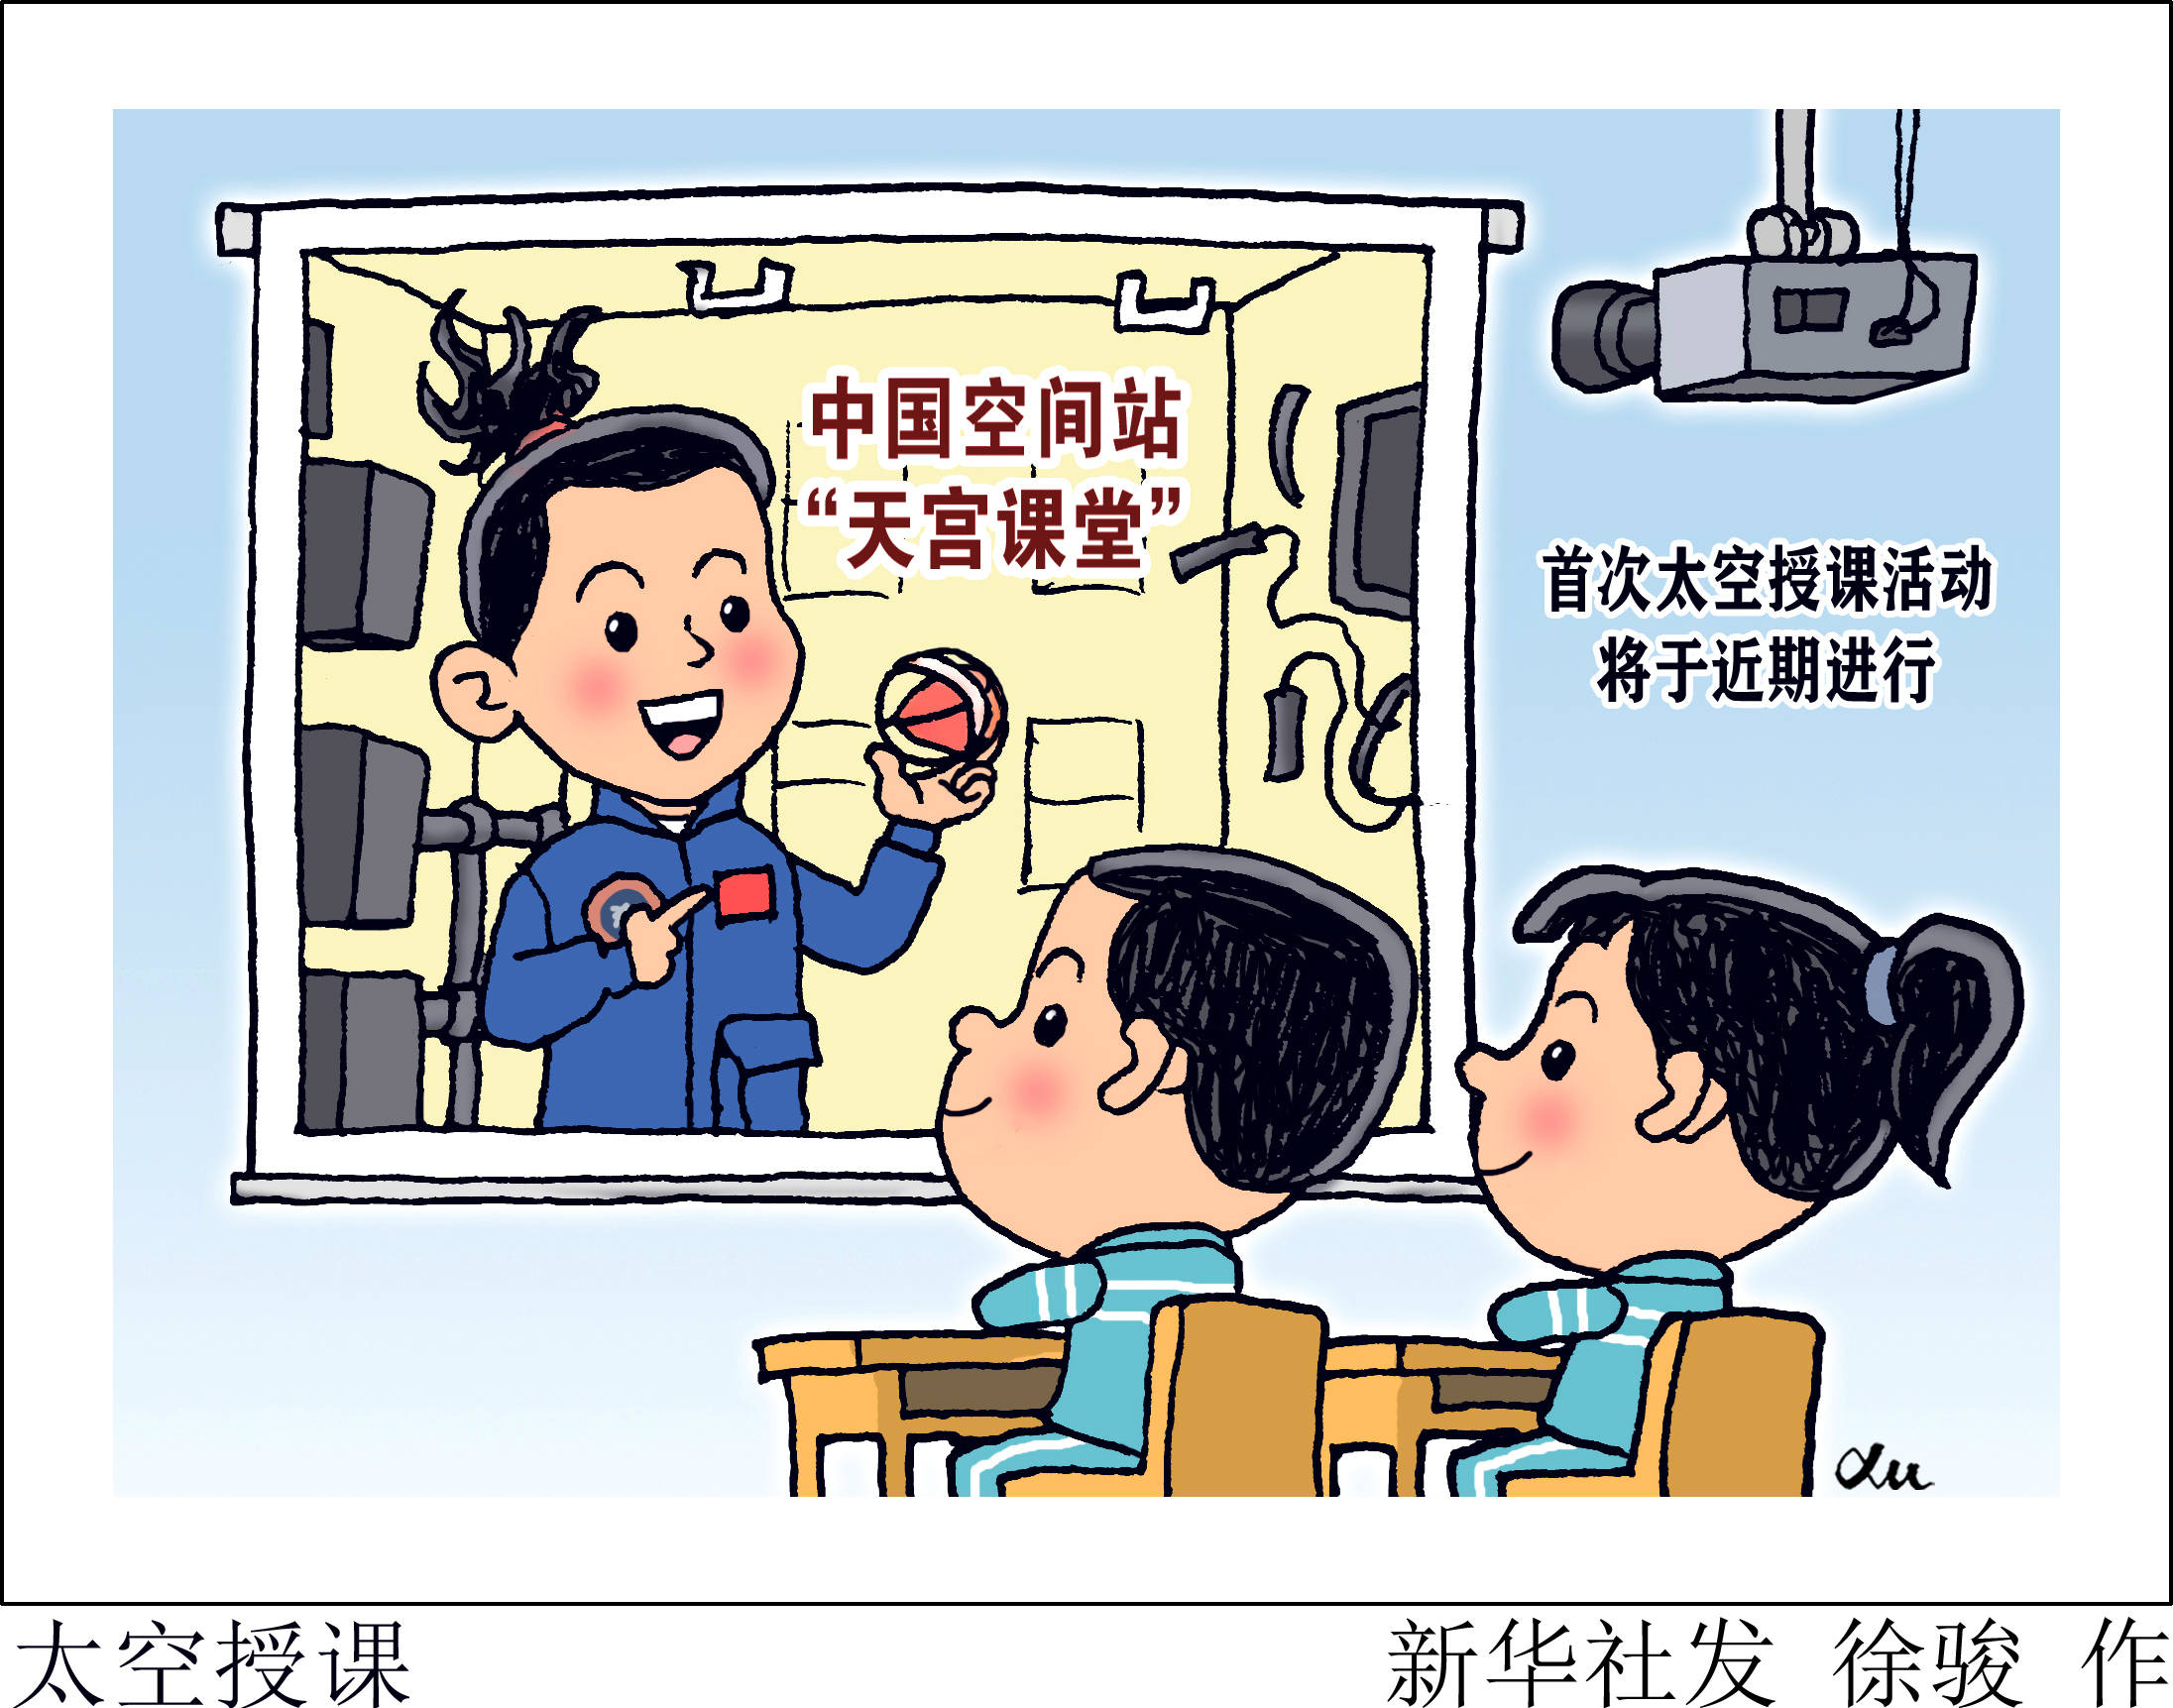 为发挥中国空间站的综合效益,中国首个太空科普教育品牌天宫课堂